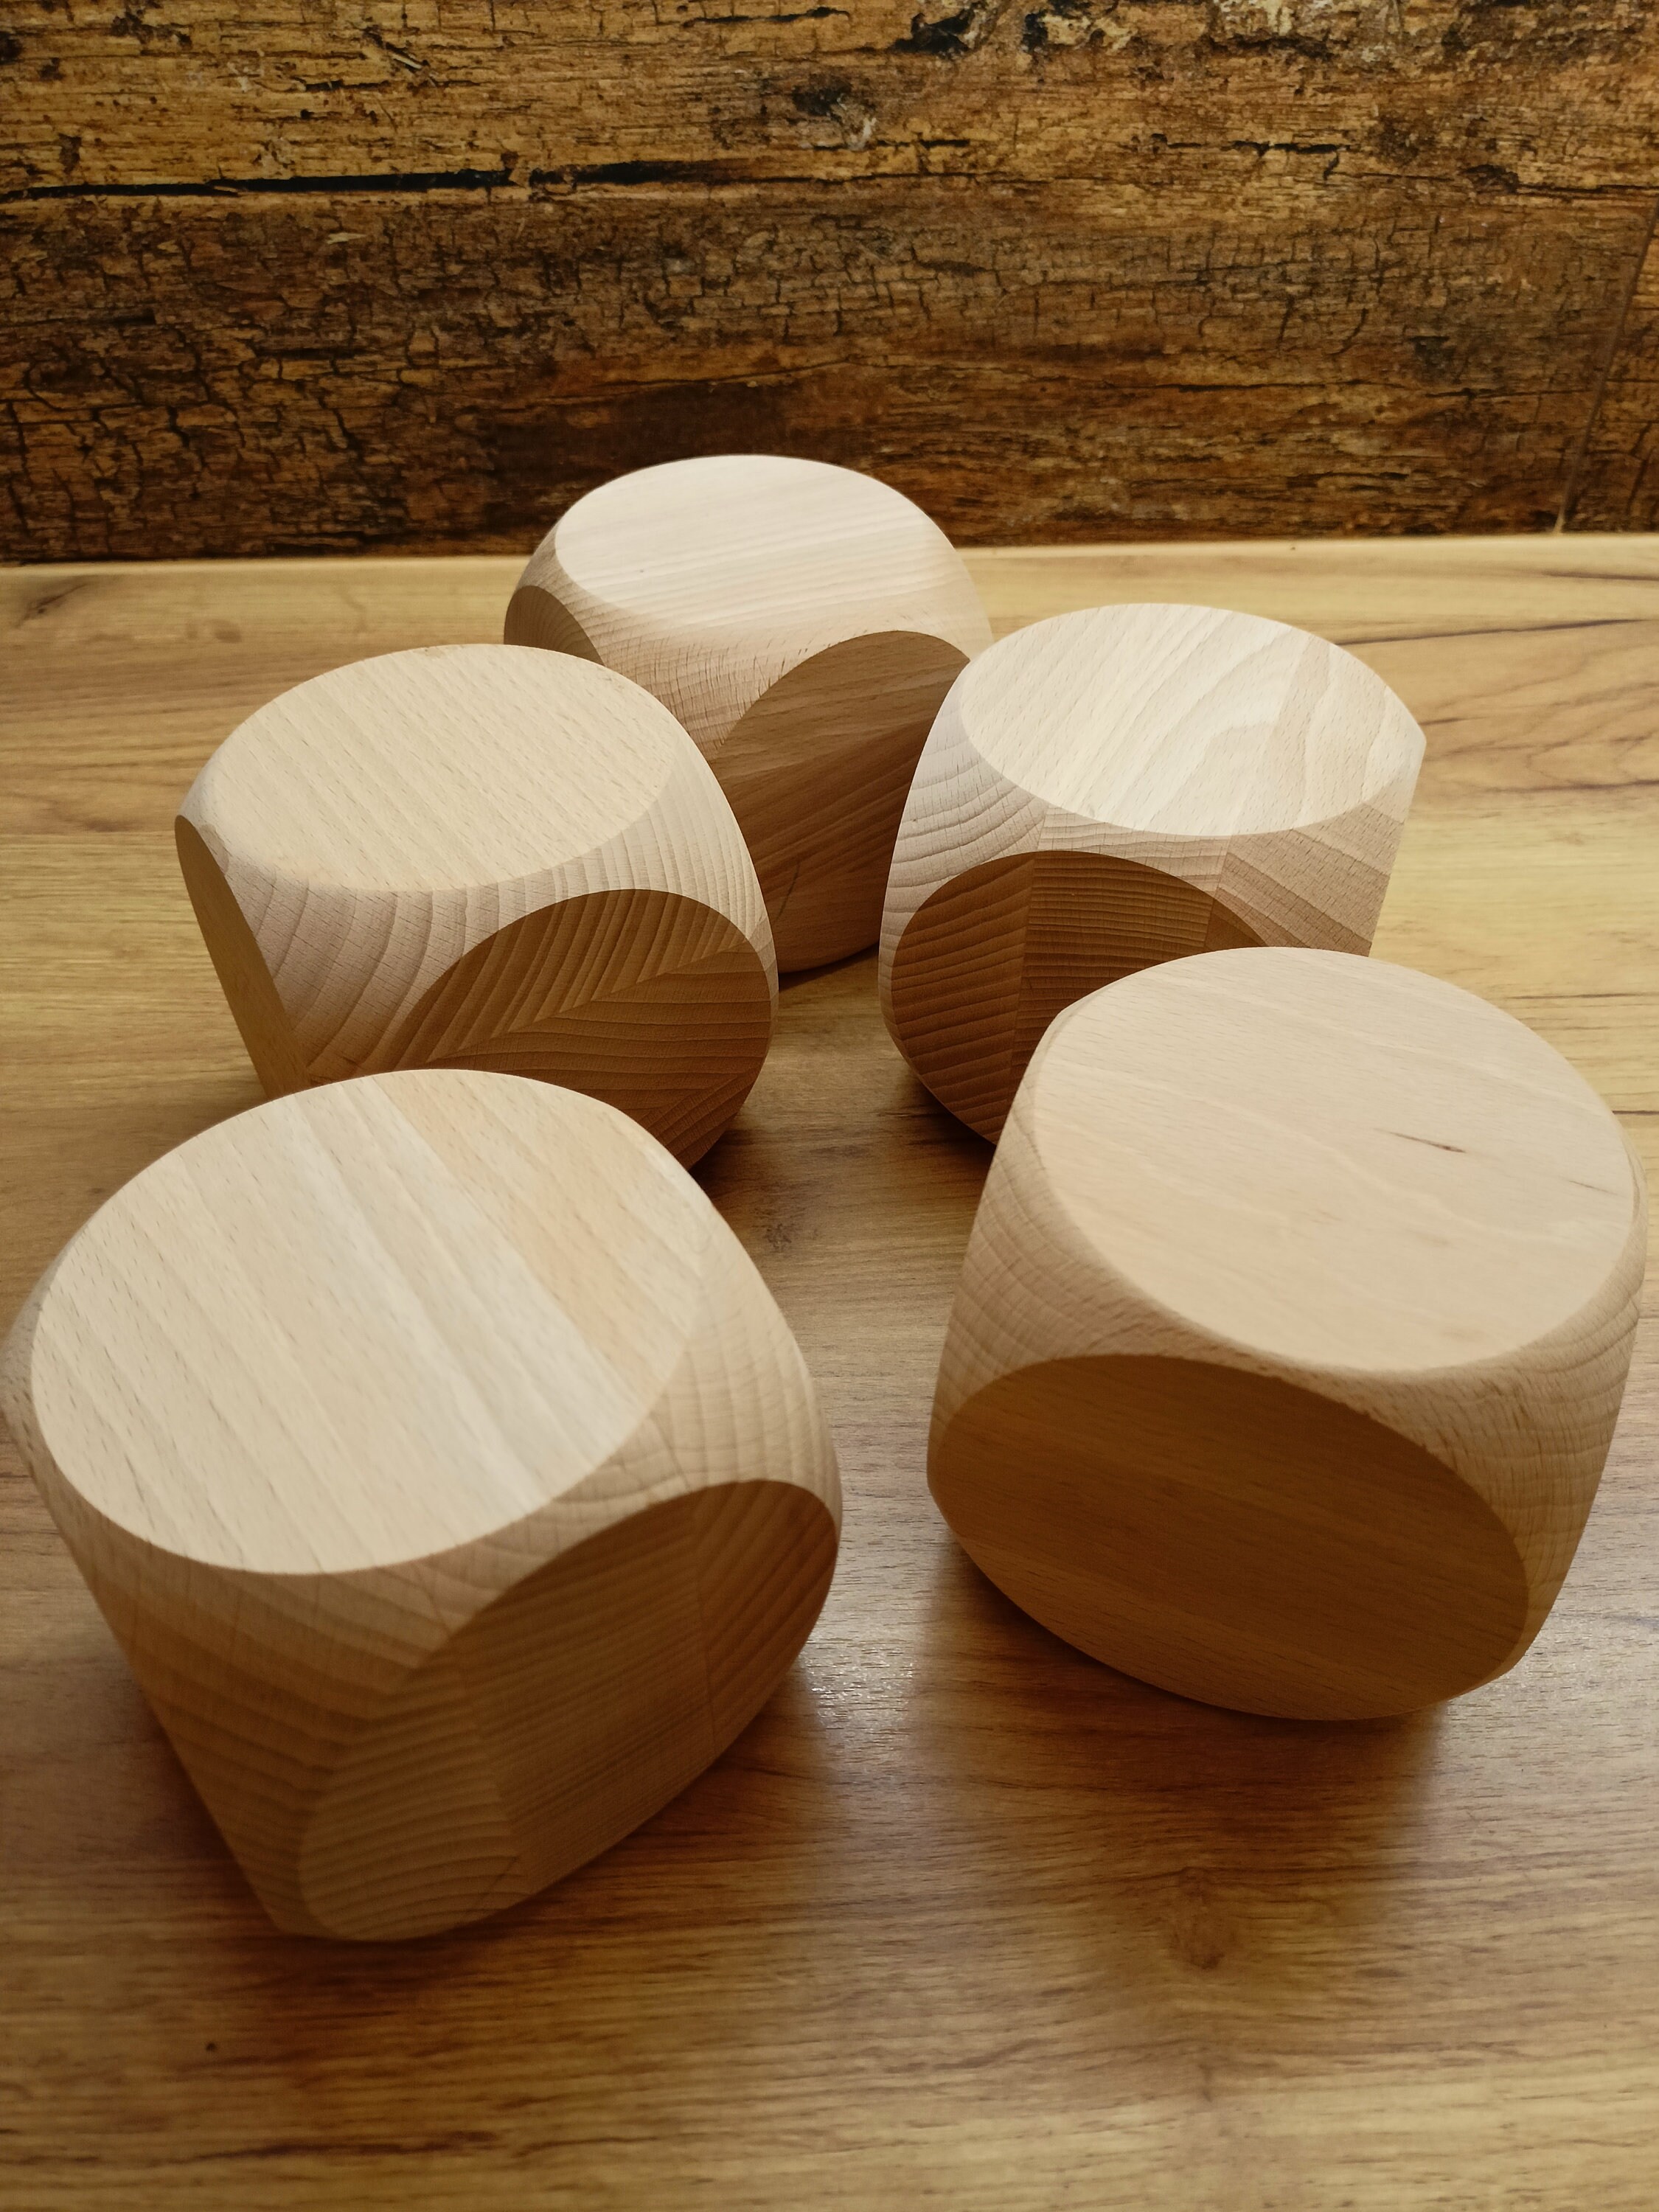 100 cubi in legno colorati 2x2x2 cm